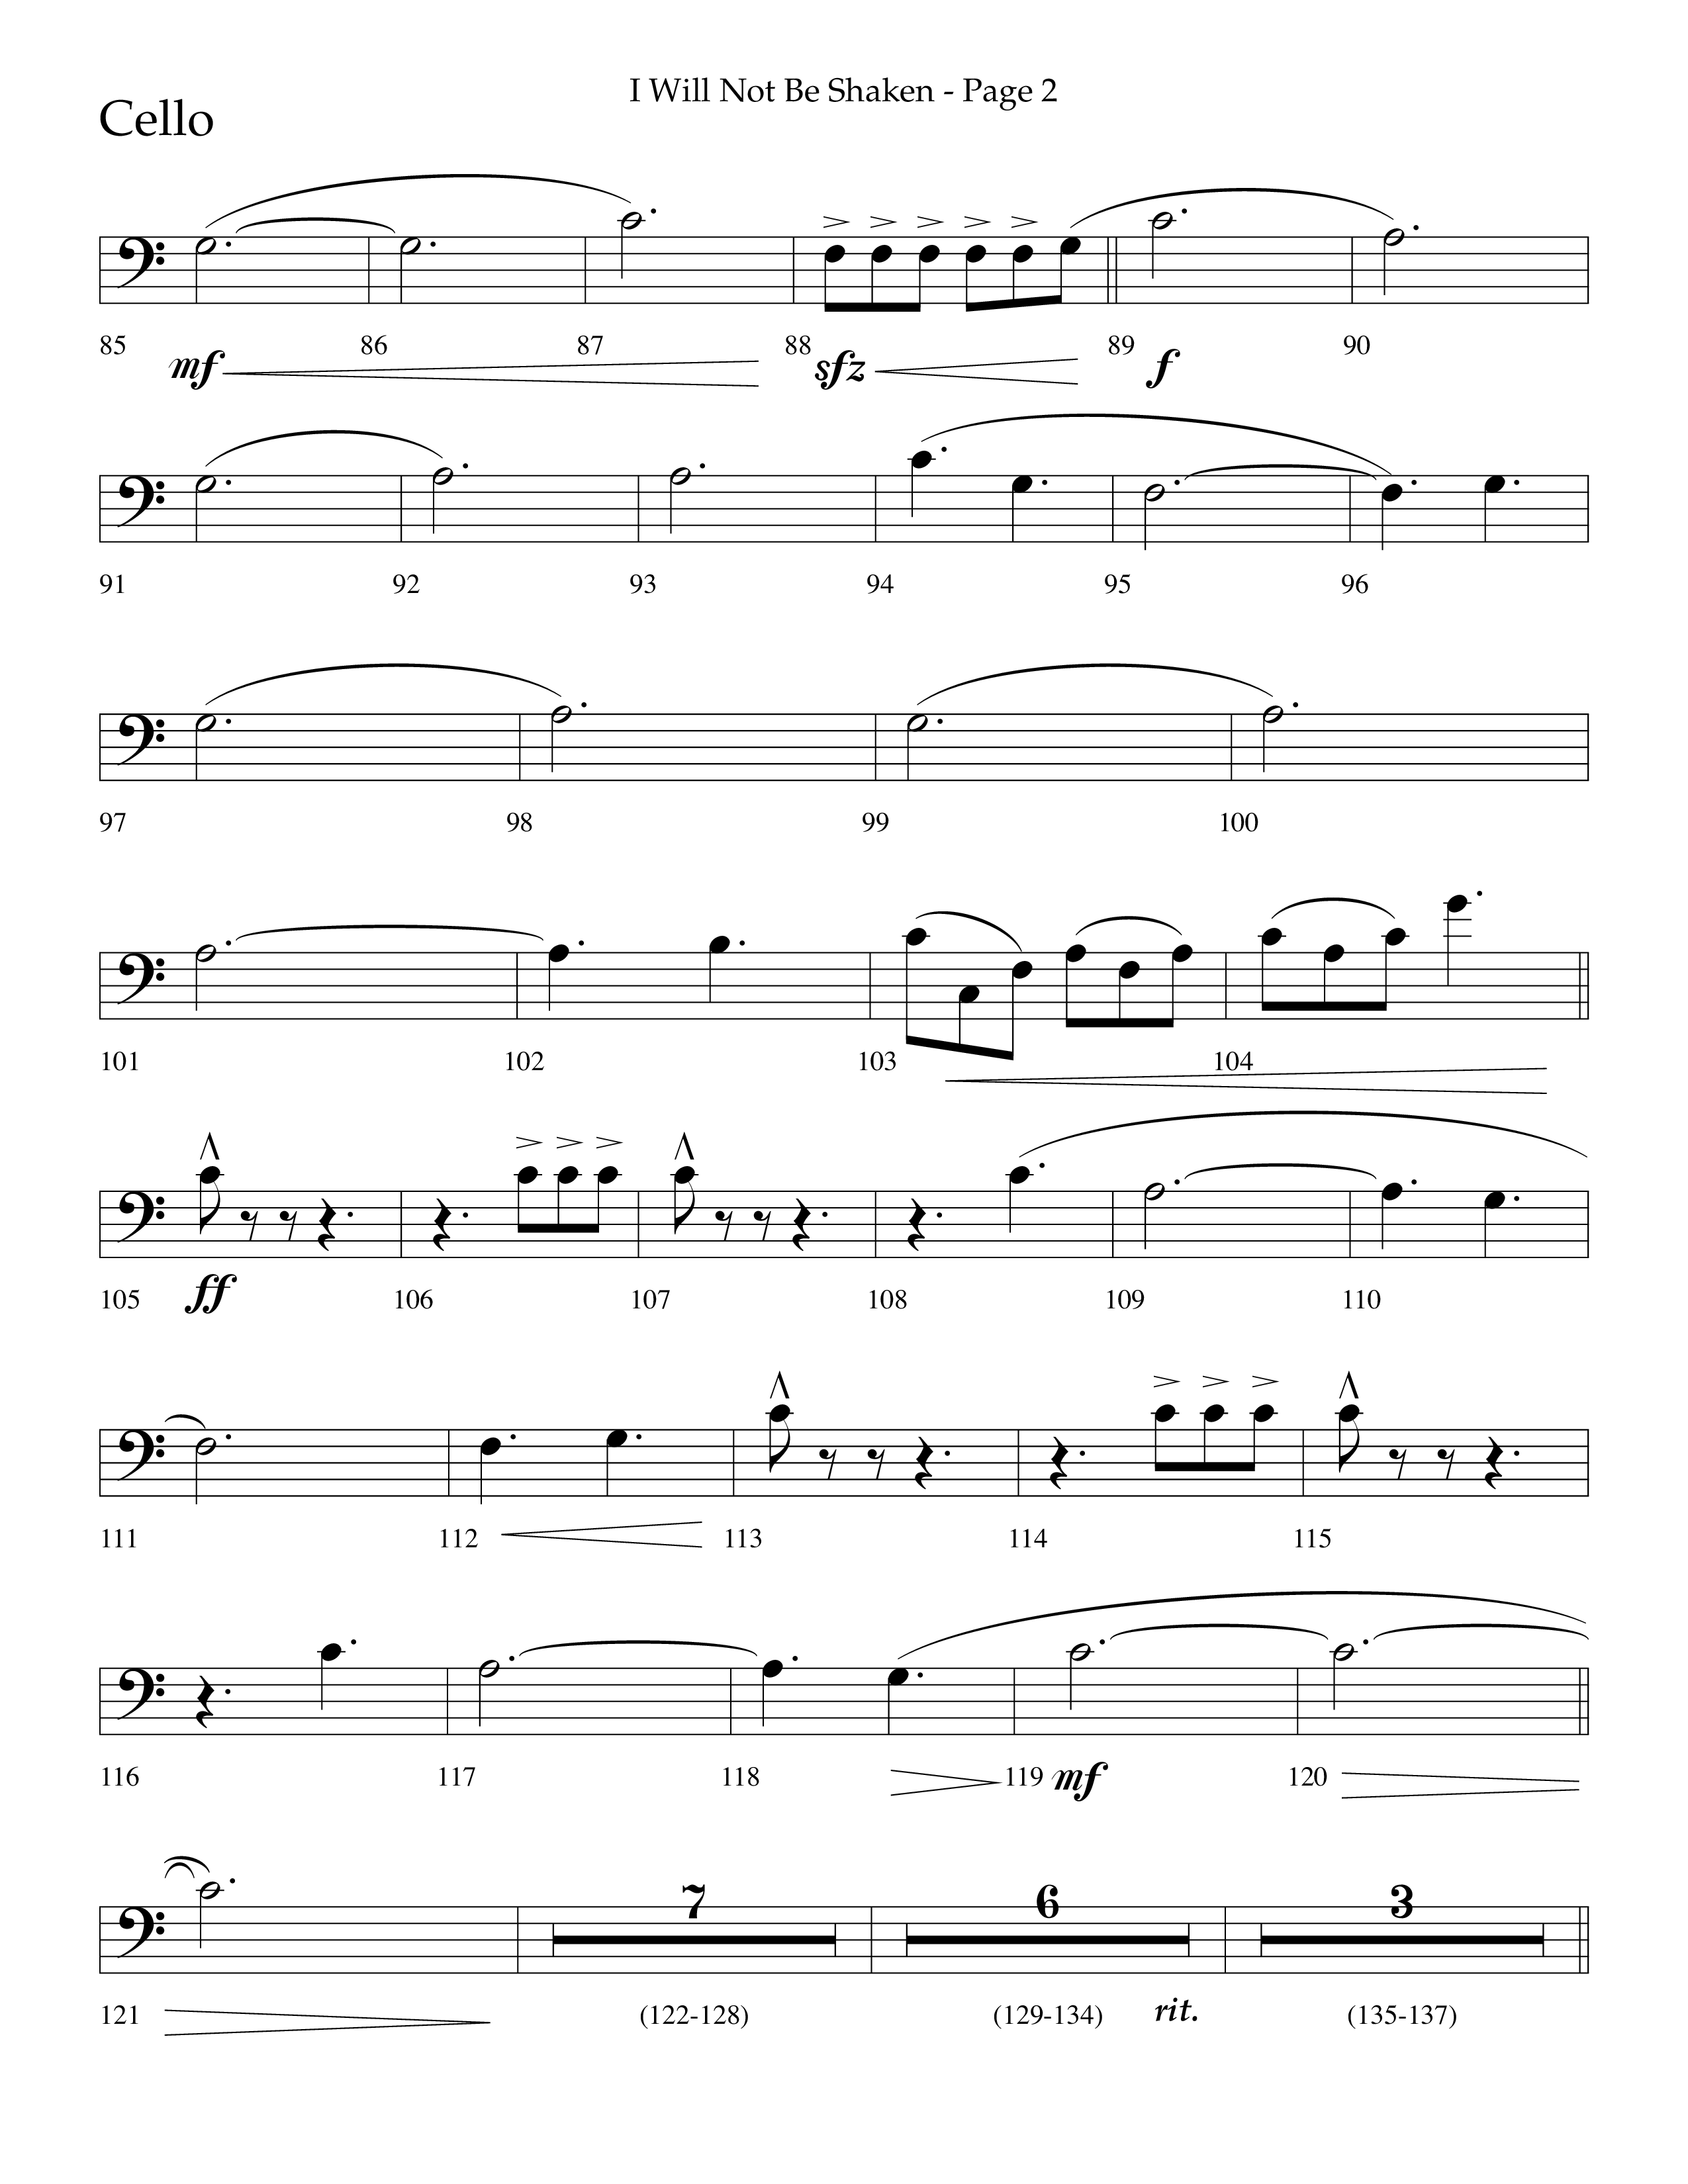 I Will Not Be Shaken (Choral Anthem SATB) Cello (Lifeway Choral / Arr. Cliff Duren)